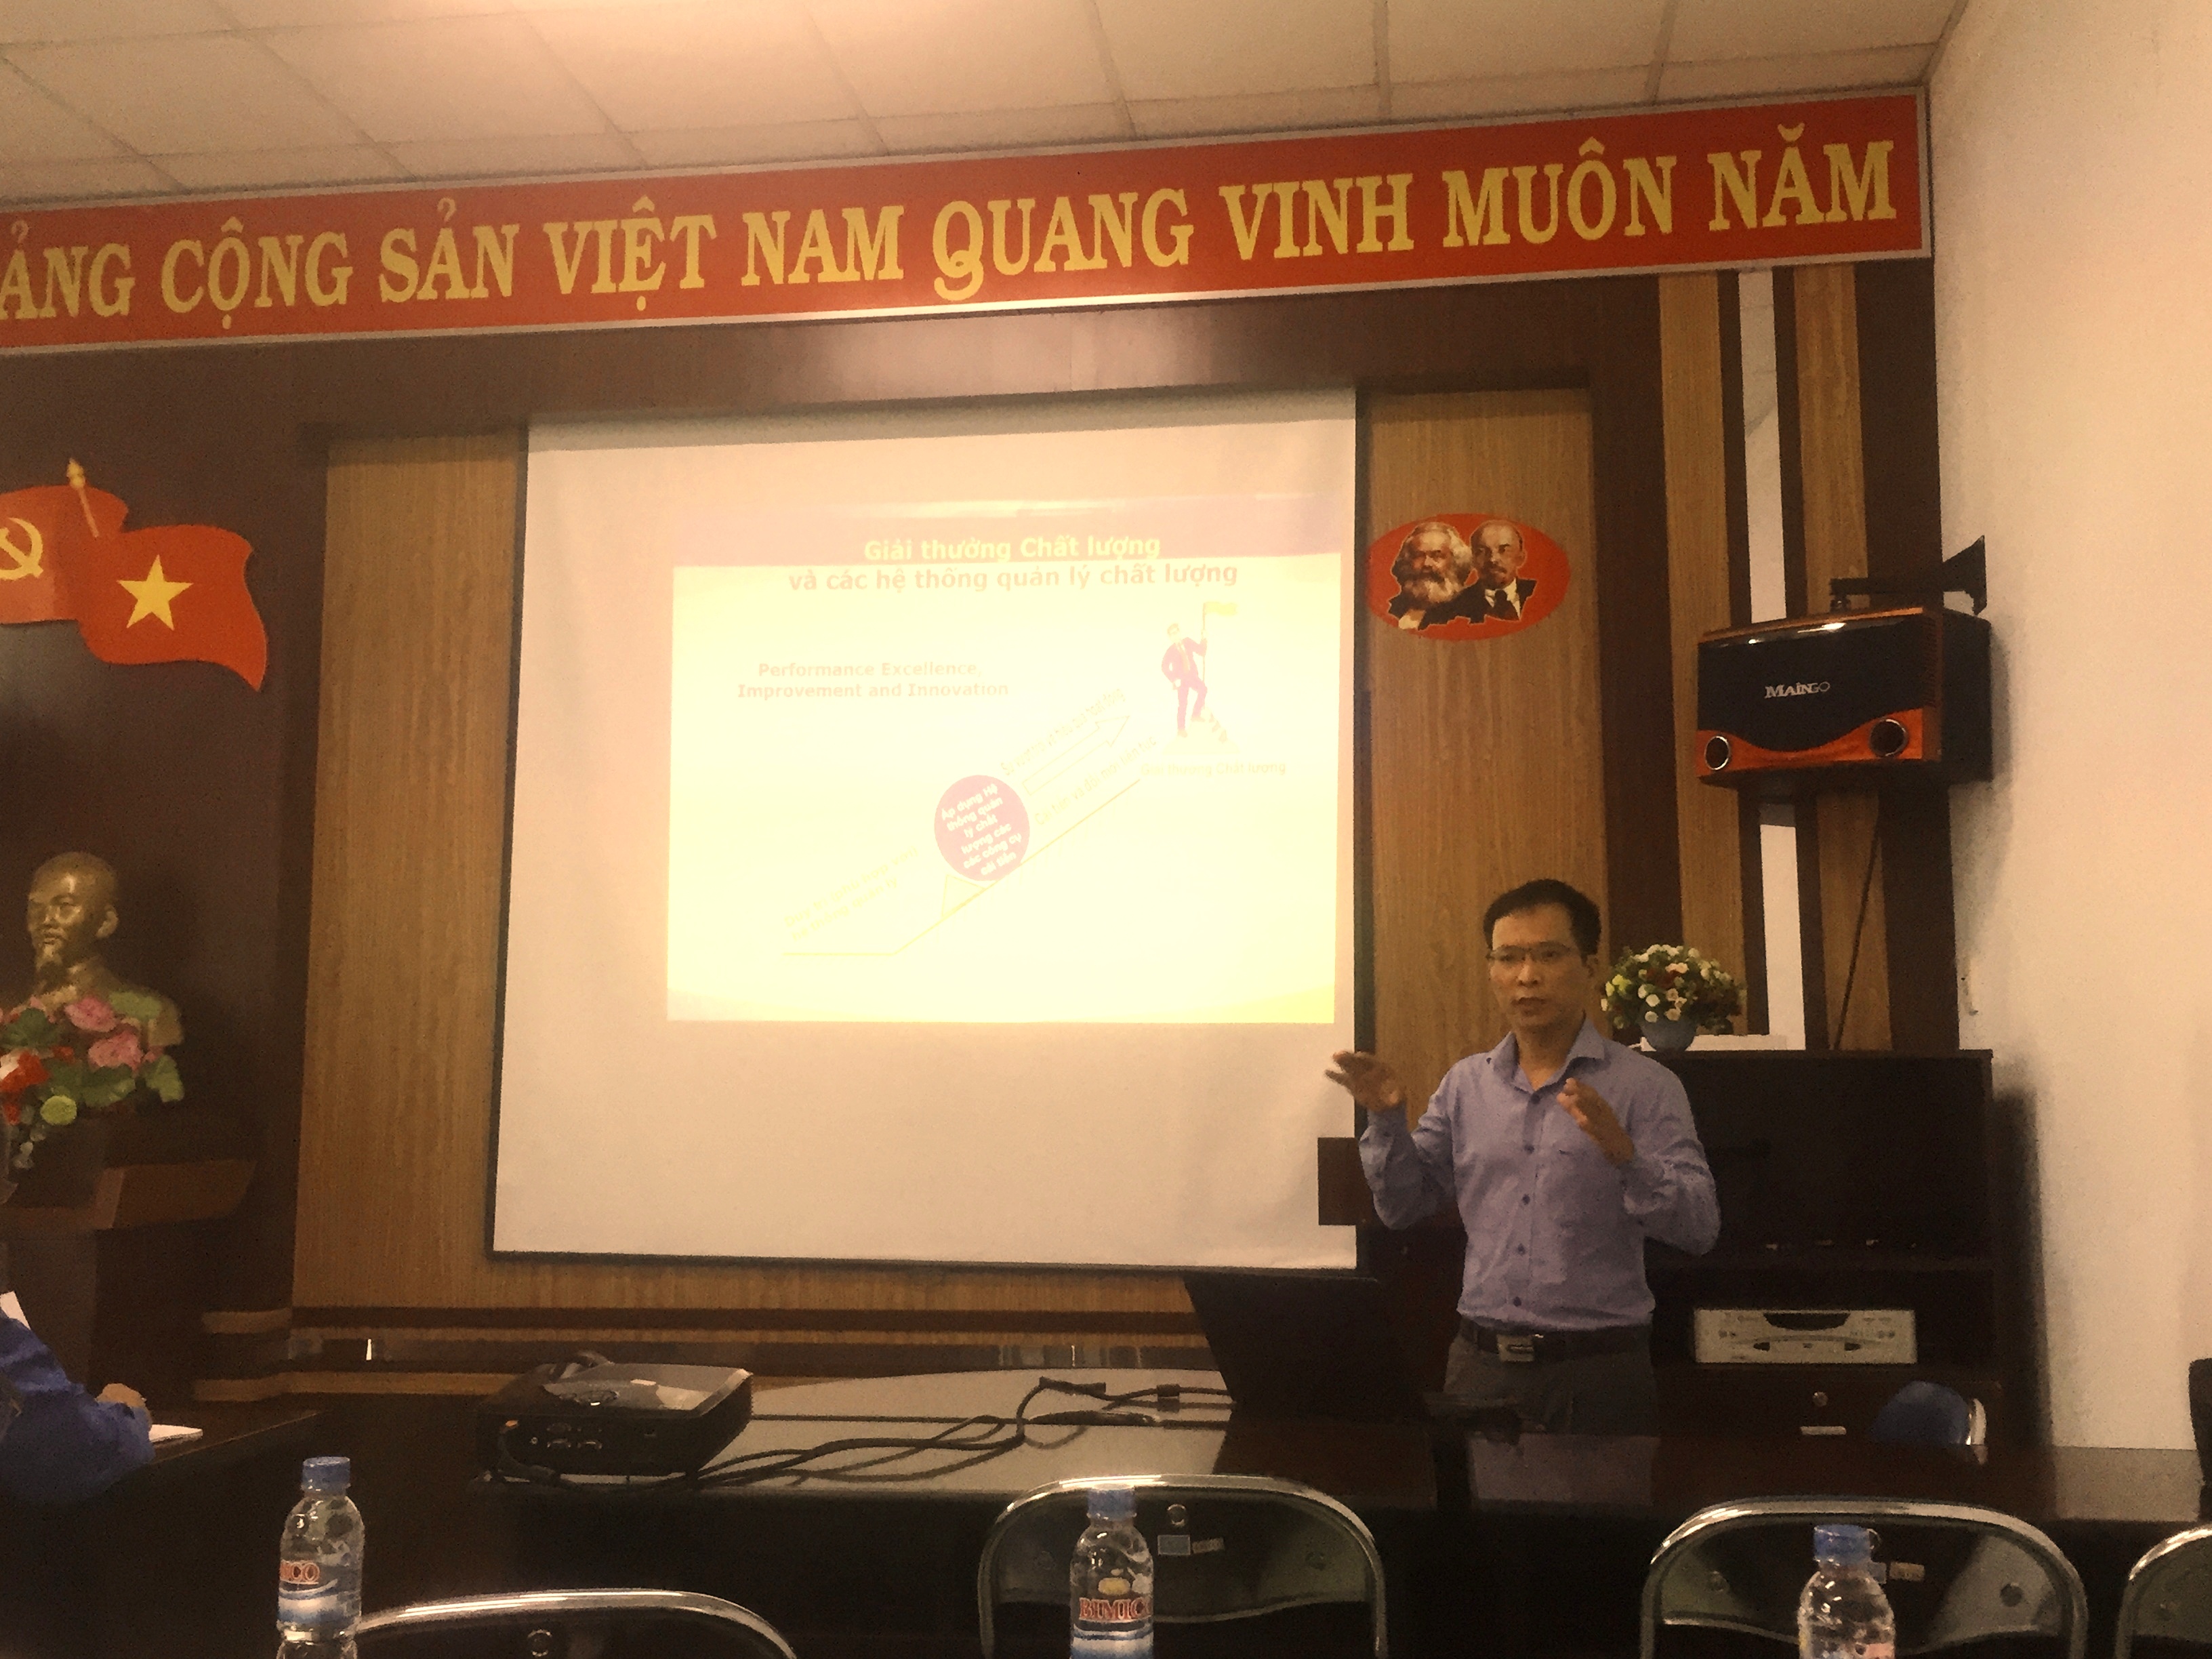  Ông Phùng Mạnh Trường – Phó Viện trưởng Viện Tiêu chuẩn Chất lượng Việt Nam trong chương trình đào tạo